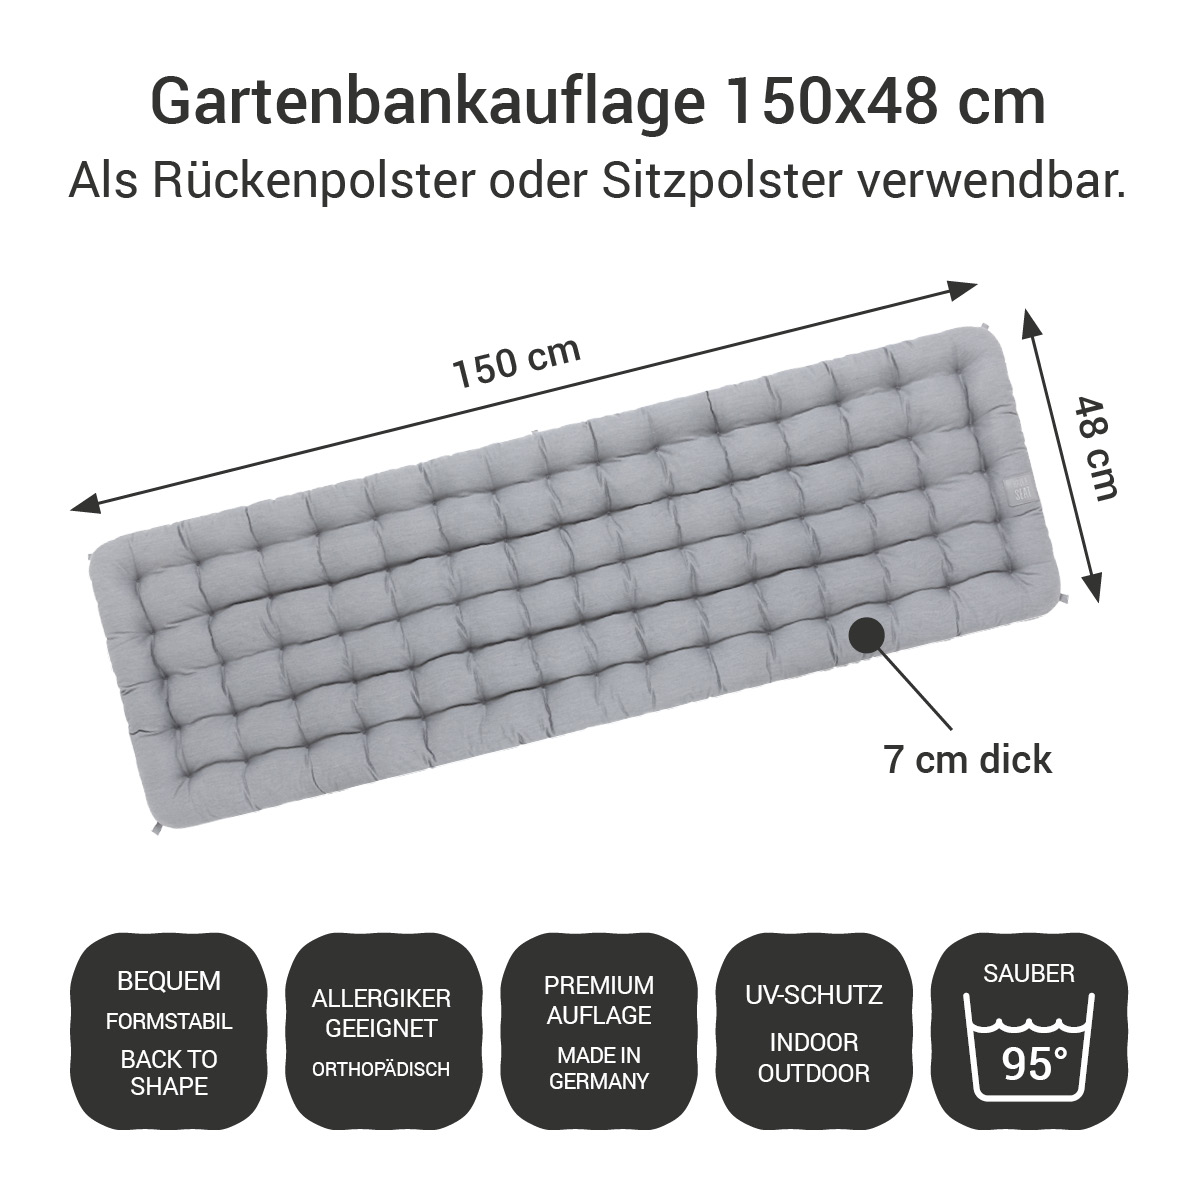 Gartenbankauflage hellgrau | 150x48 cm / 150 x 50 cm | bequem & orthopädisch, komplett im Ganzen waschbar bis 95°C, wetterfest, Made in Germany